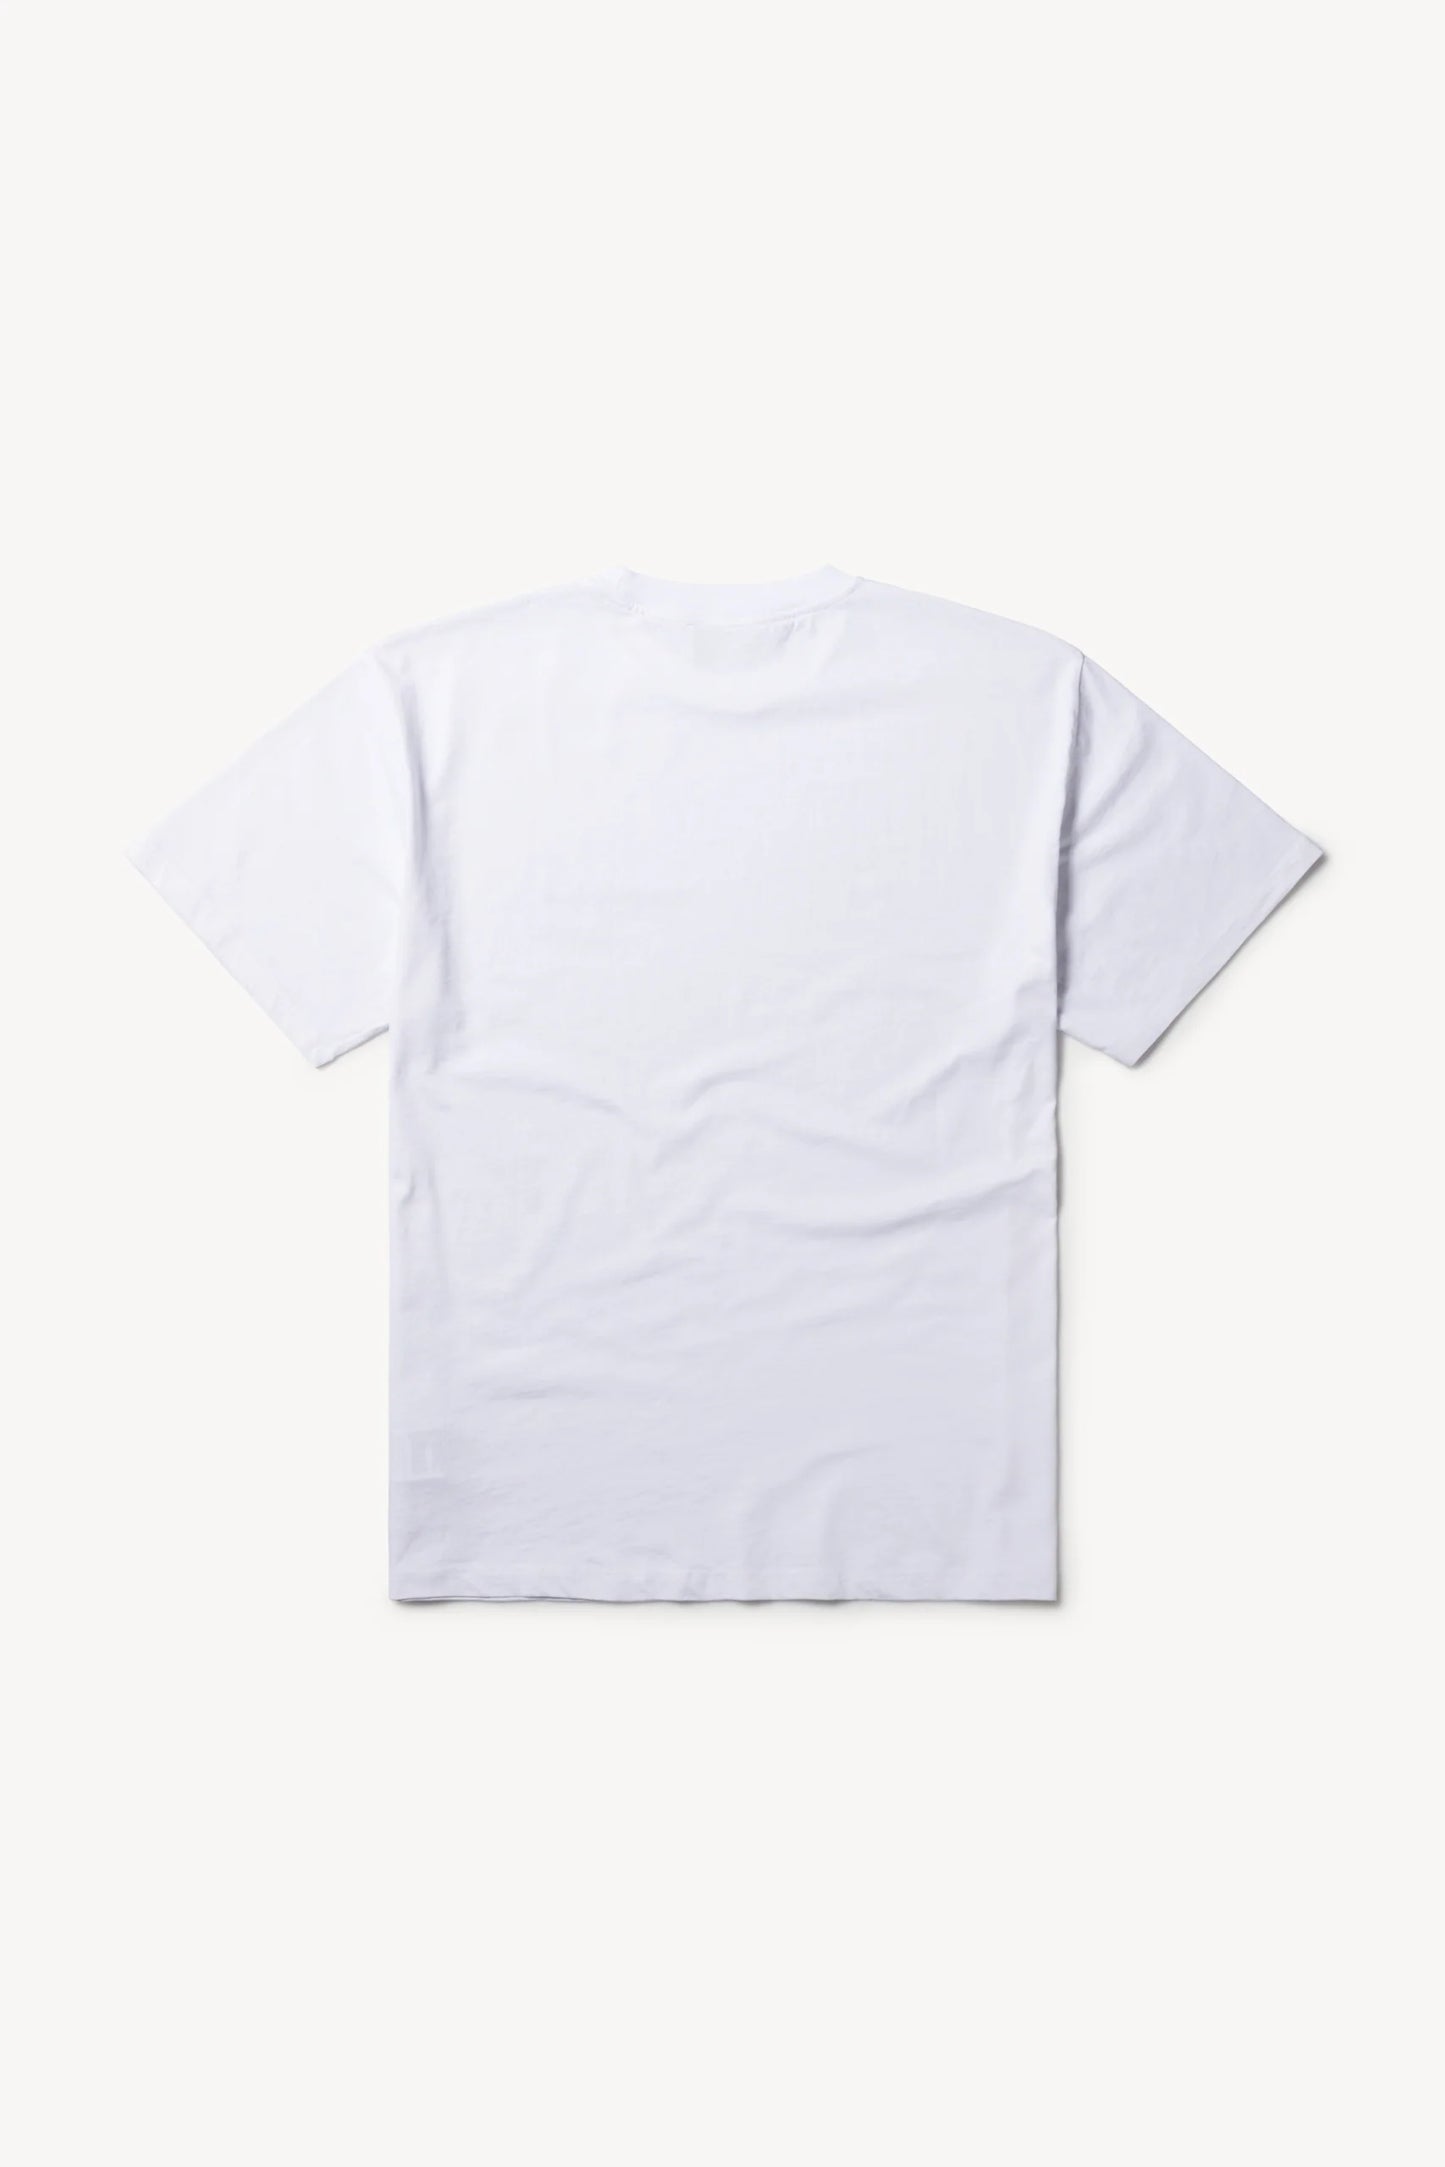 Mini No Problemo, White, T-Shirt